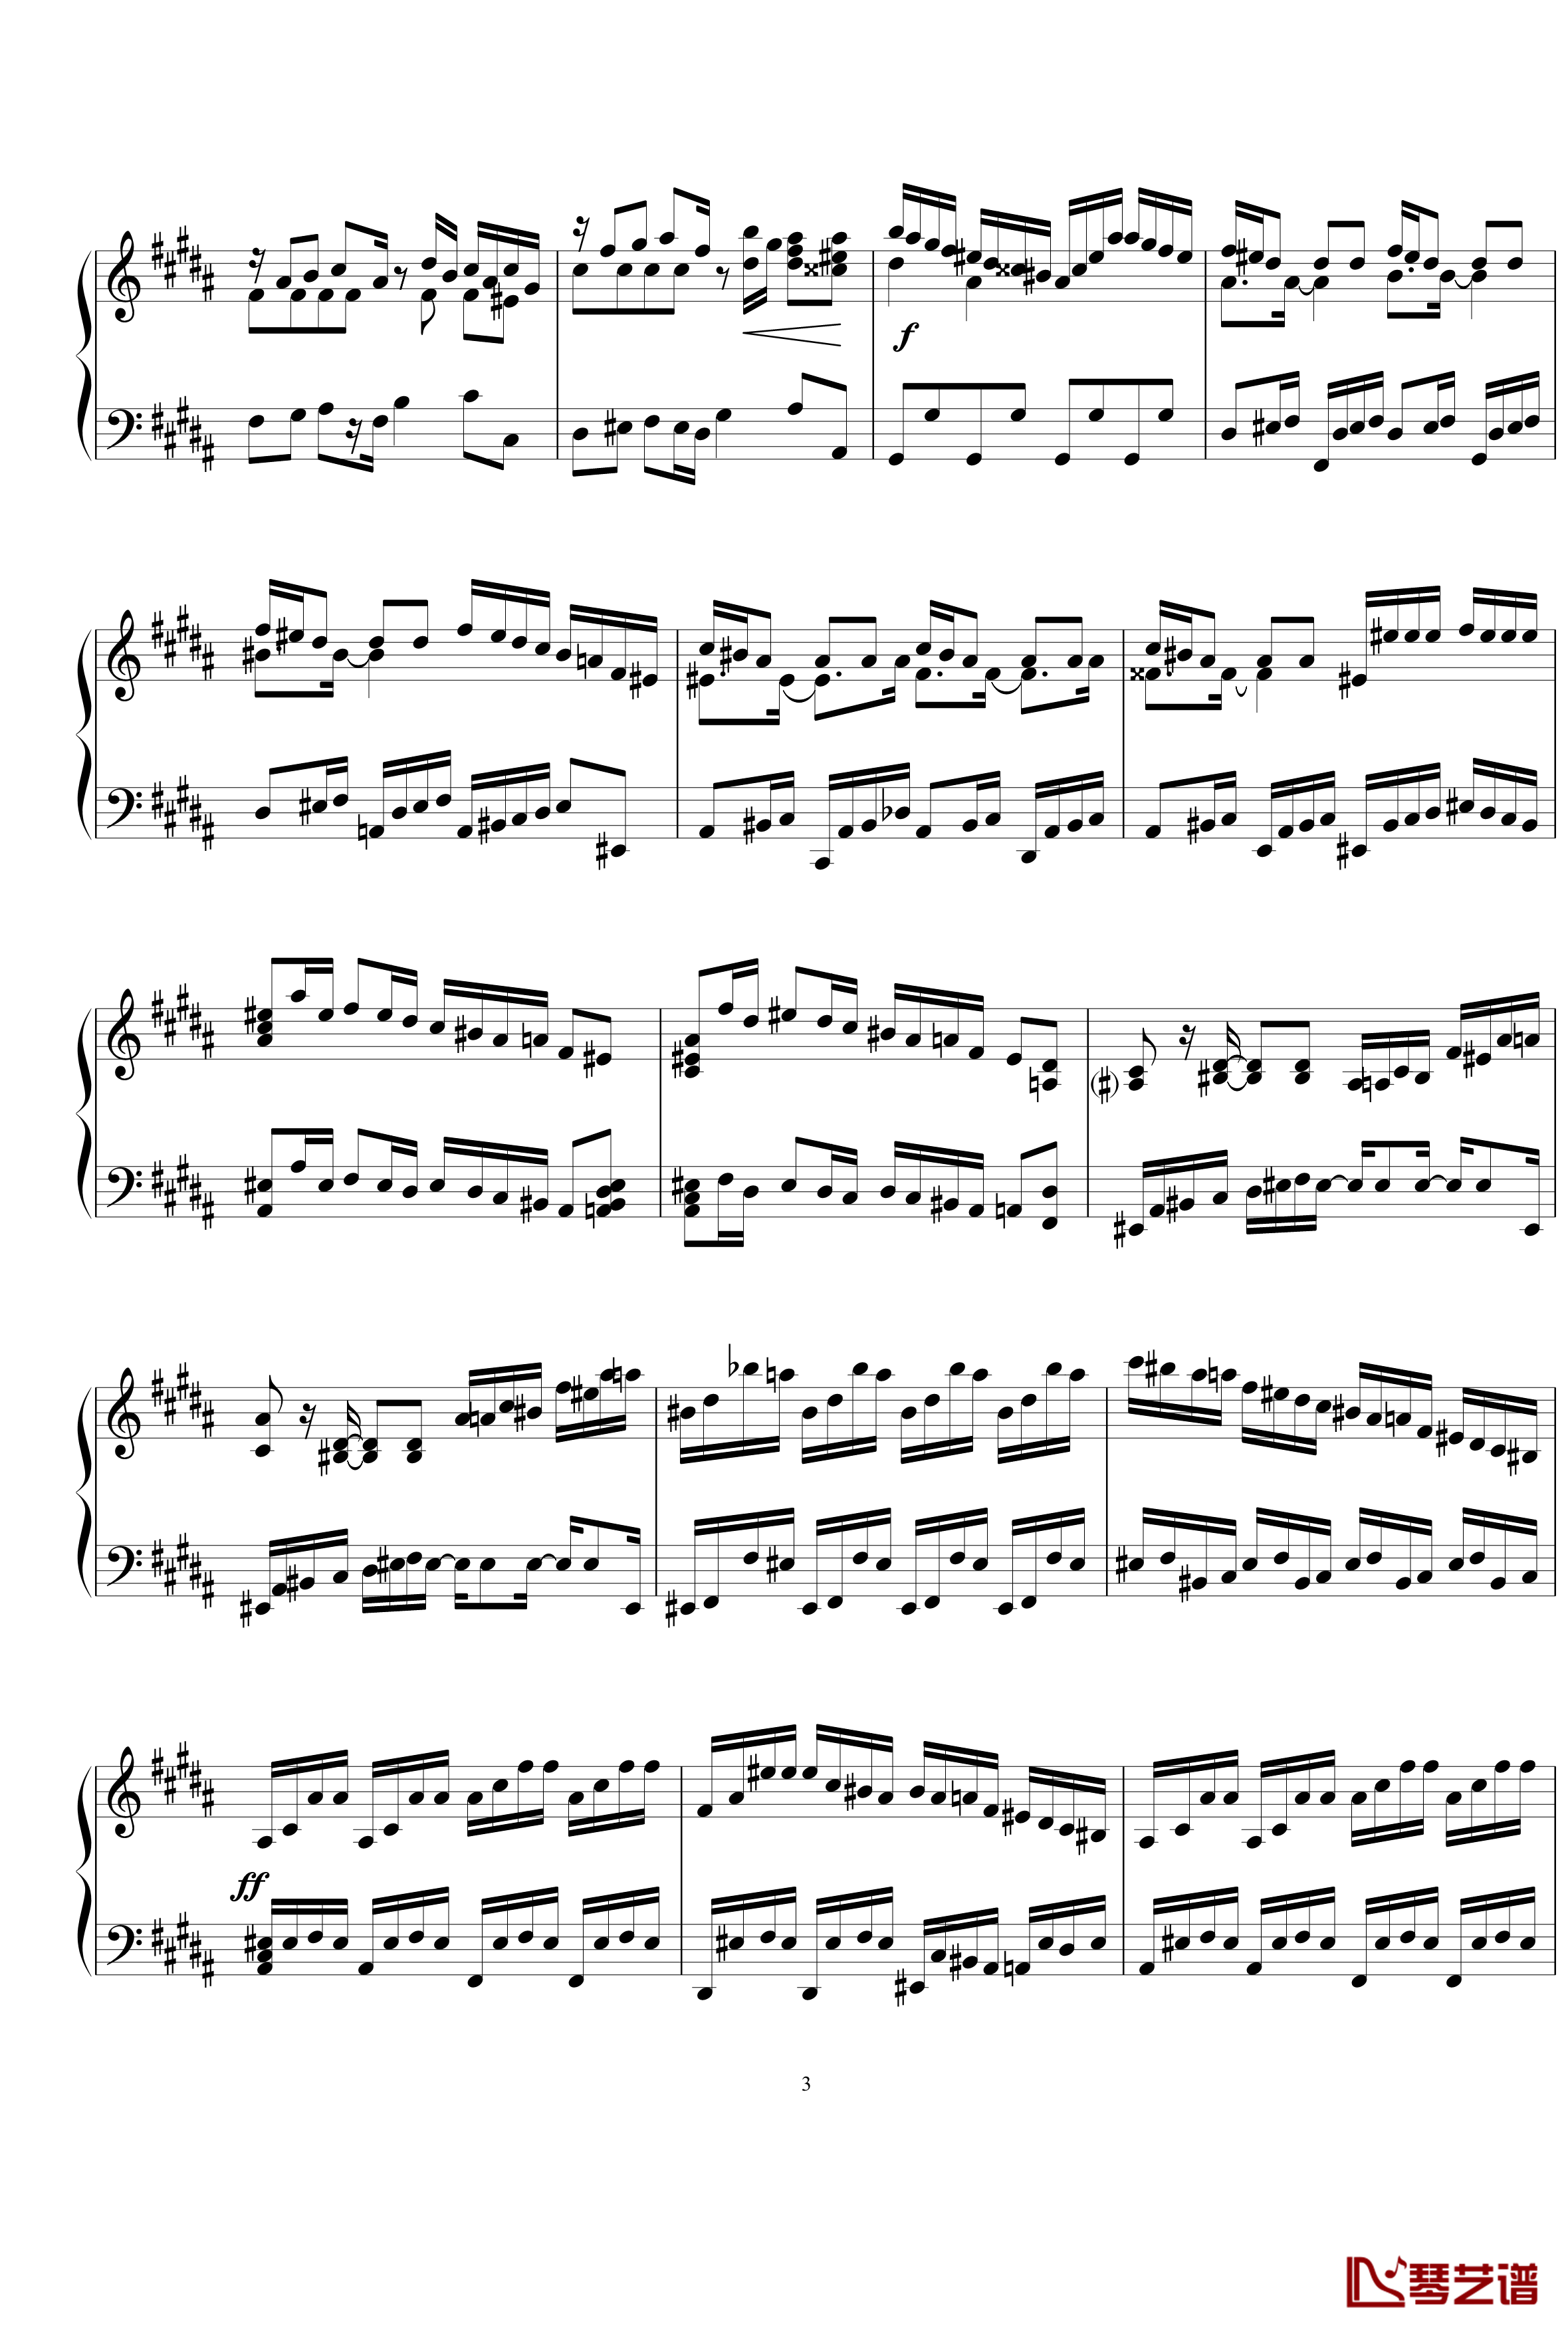 练习曲钢琴谱1.5-gzf1353